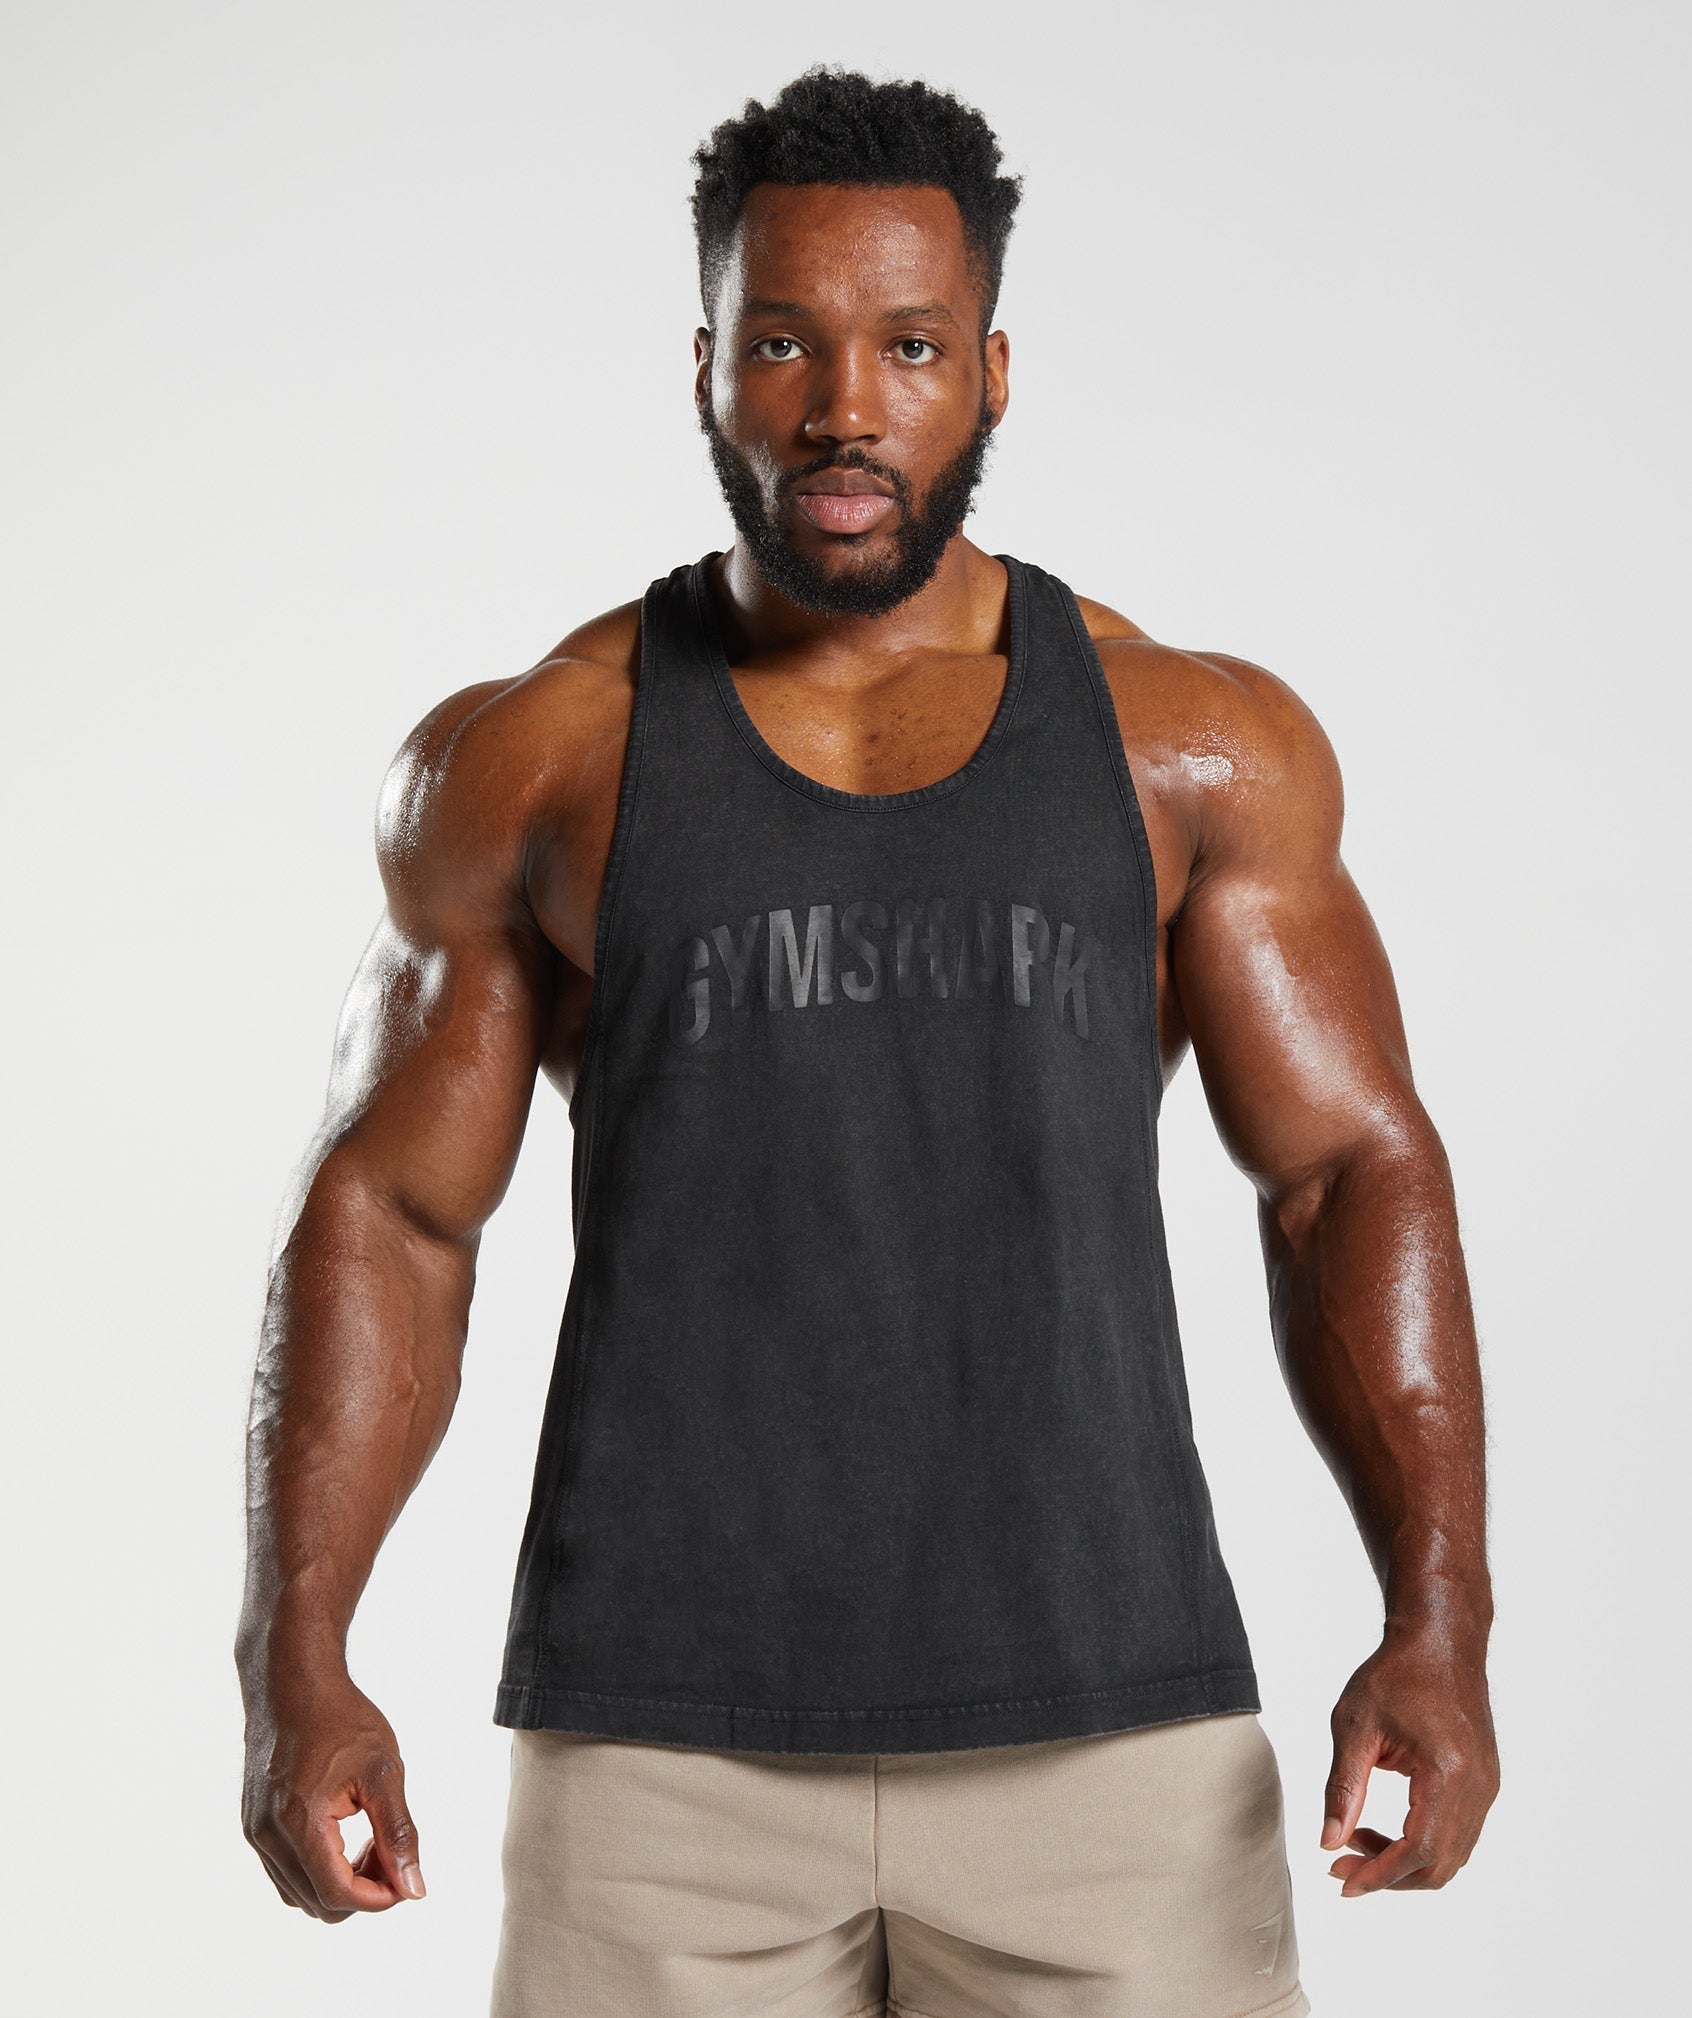 Gymx Fitness Designer Gym Stringer Vest, Gym Vest, Racer Y Back, Sports  Tank Tops, Sando for Men Pack of 1